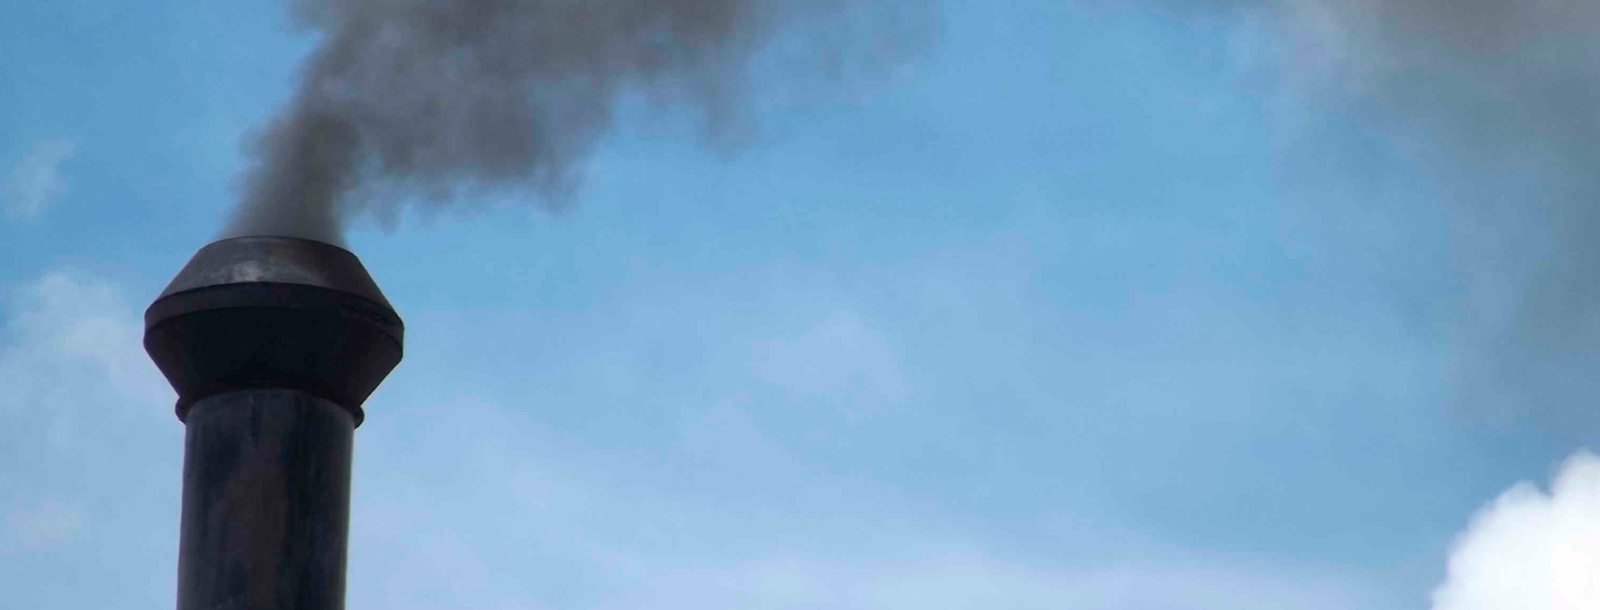 En un nuevo aniversario del Plan de Descontaminación atmosférica en el Maule, las alarmas se encienden nuevamente